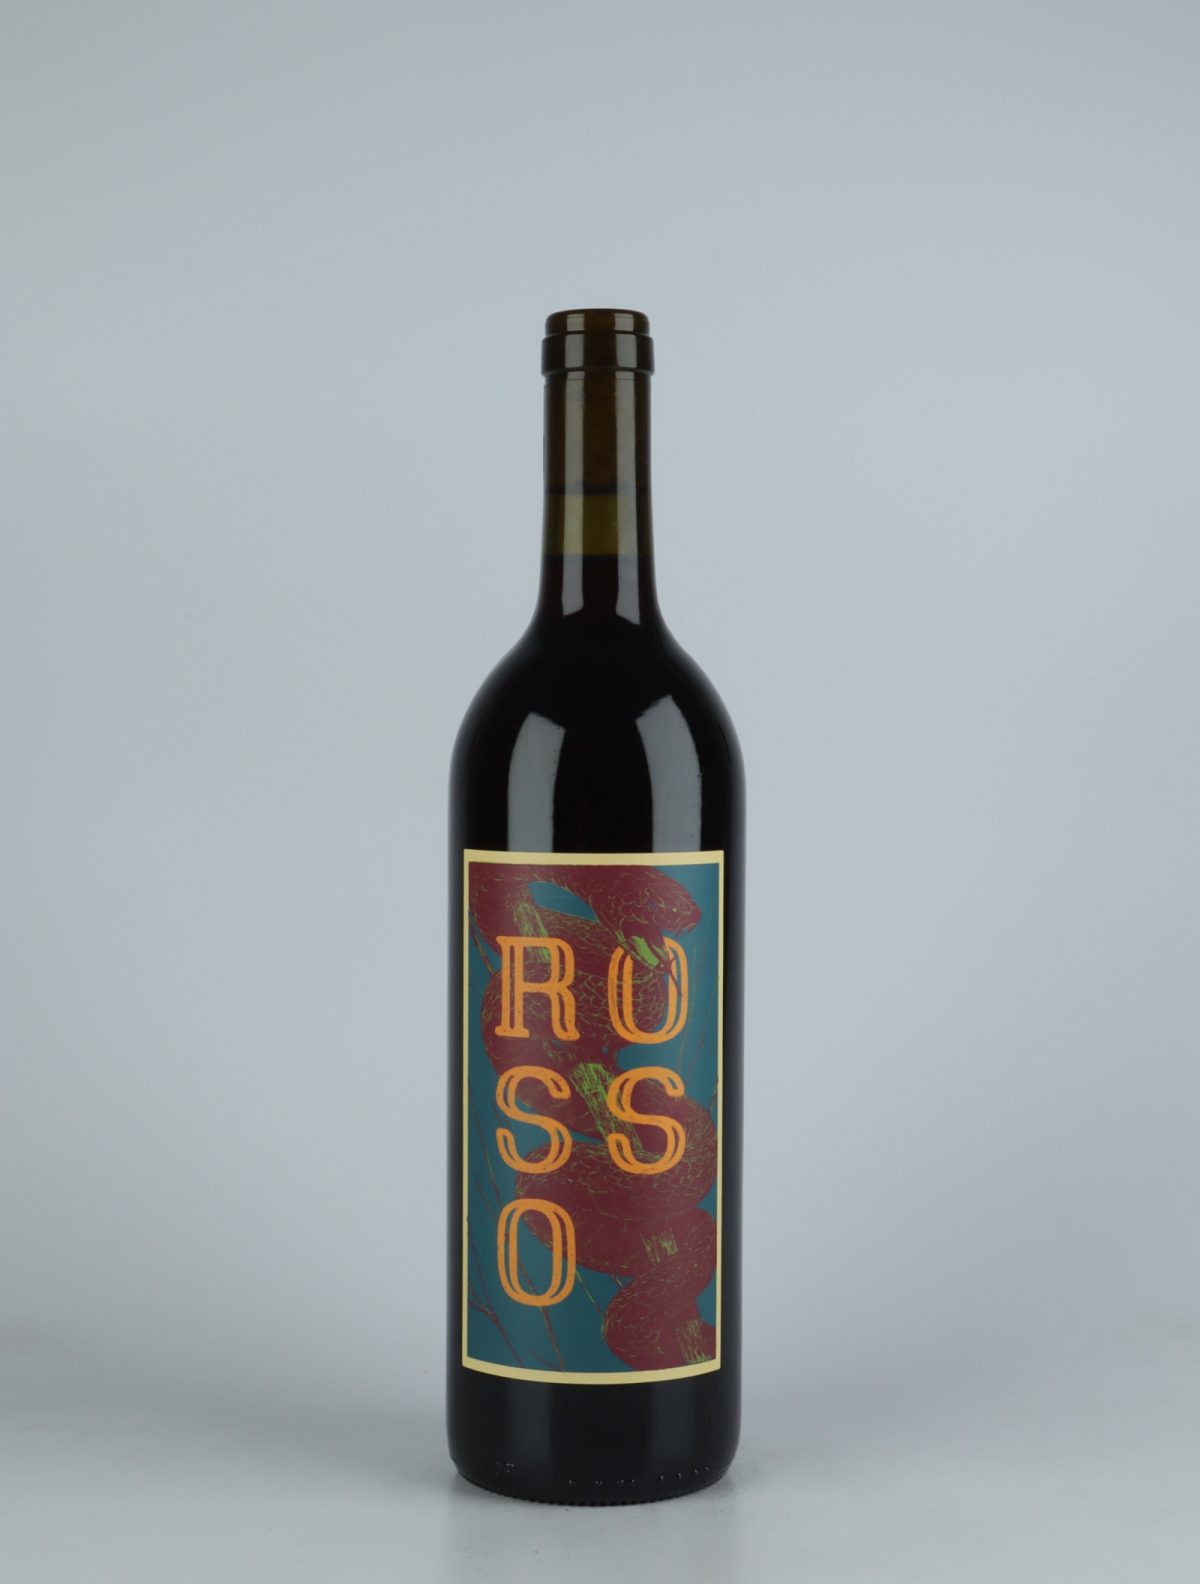 En flaske 2020 Rosso Rødvin fra Momento Mori, Victoria i Australien